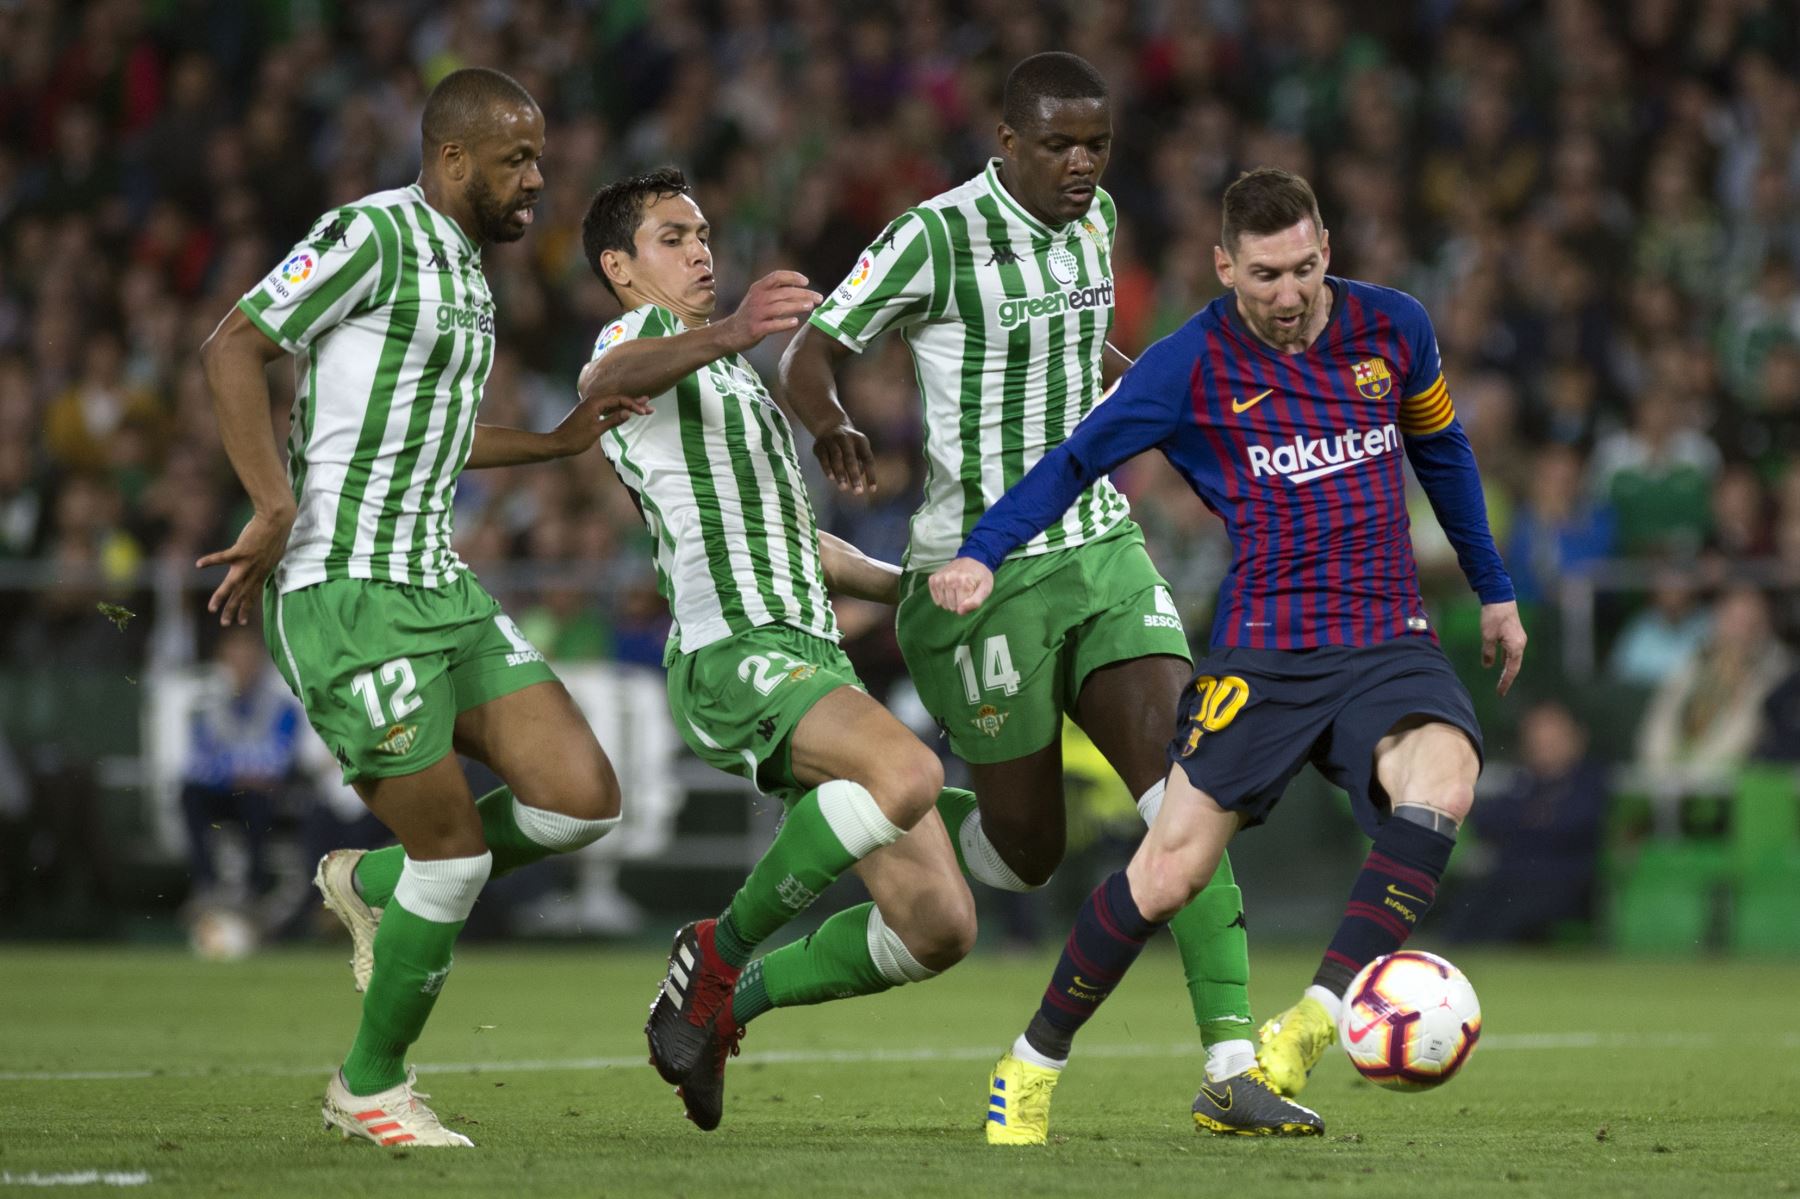 El delantero argentino de Barcelona Lionel Messi (R) dispara para marcar un gol durante el partido de fútbol de la liga española entre el Real Betis y el FC Barcelona.Foto:AFP